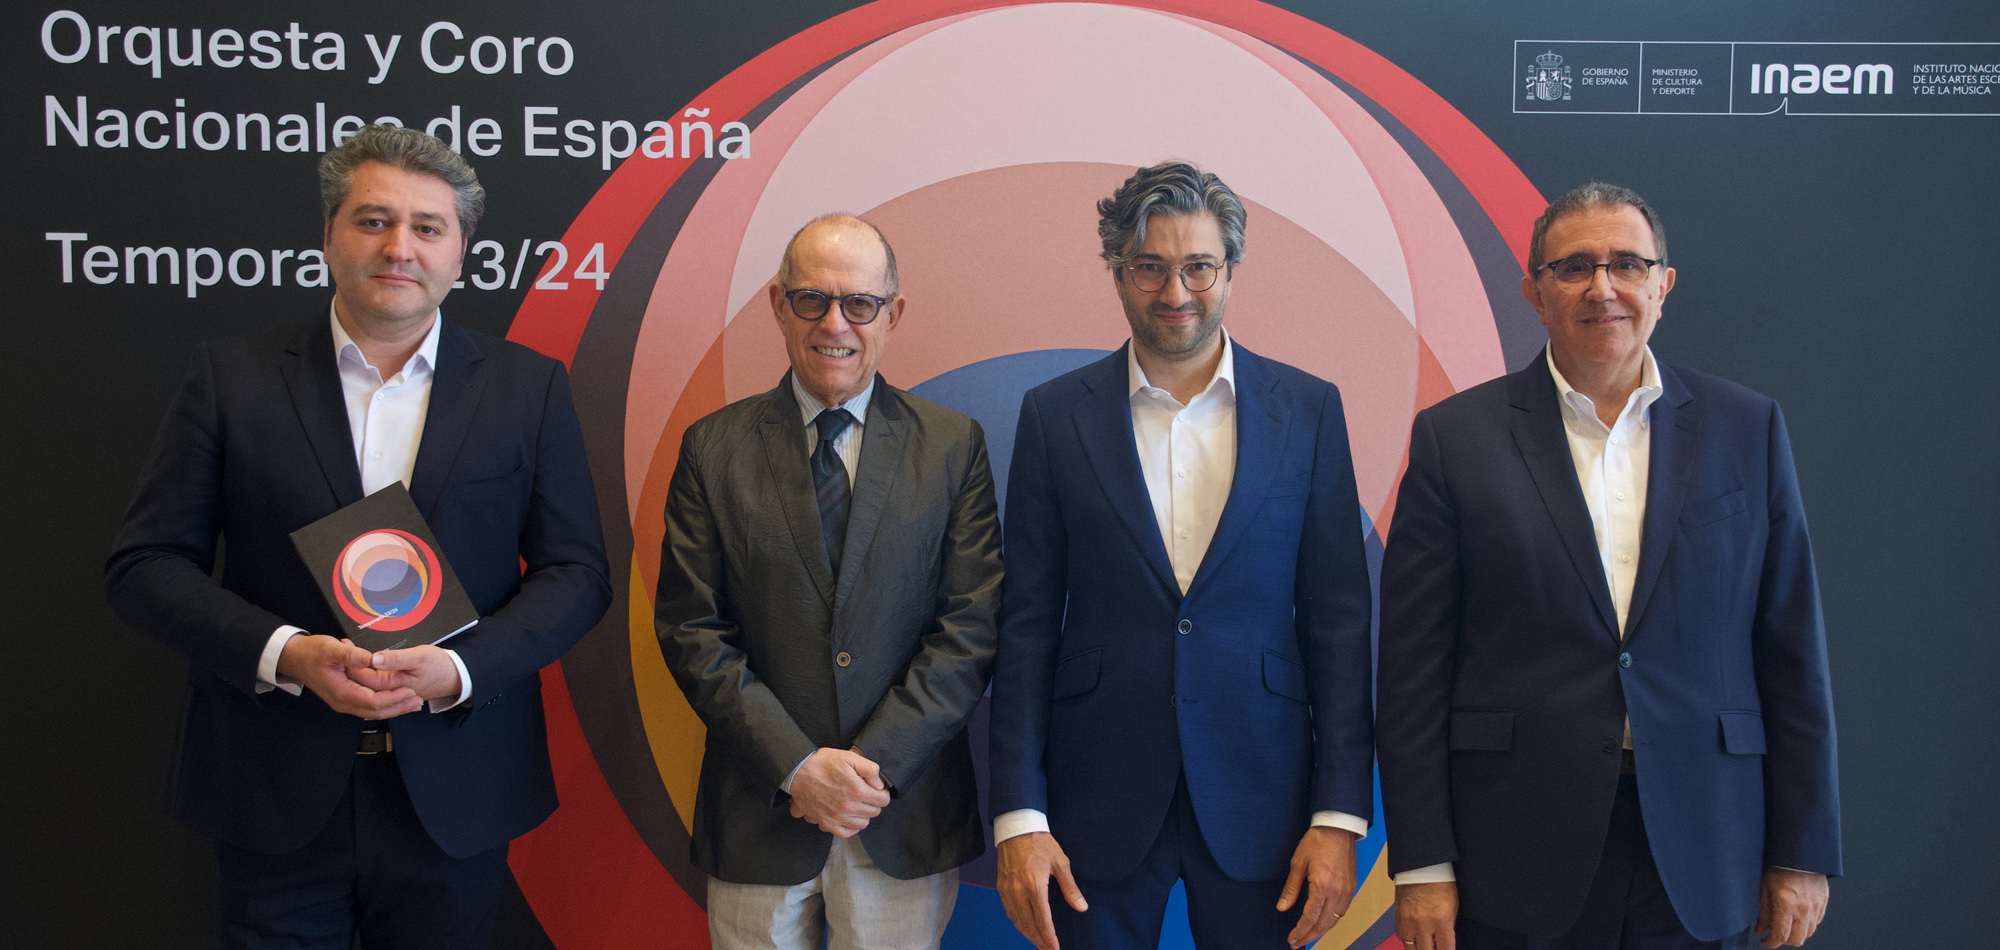 La Orquesta y Coro Nacionales de España presenta su nueva Temporada 2023/2024 